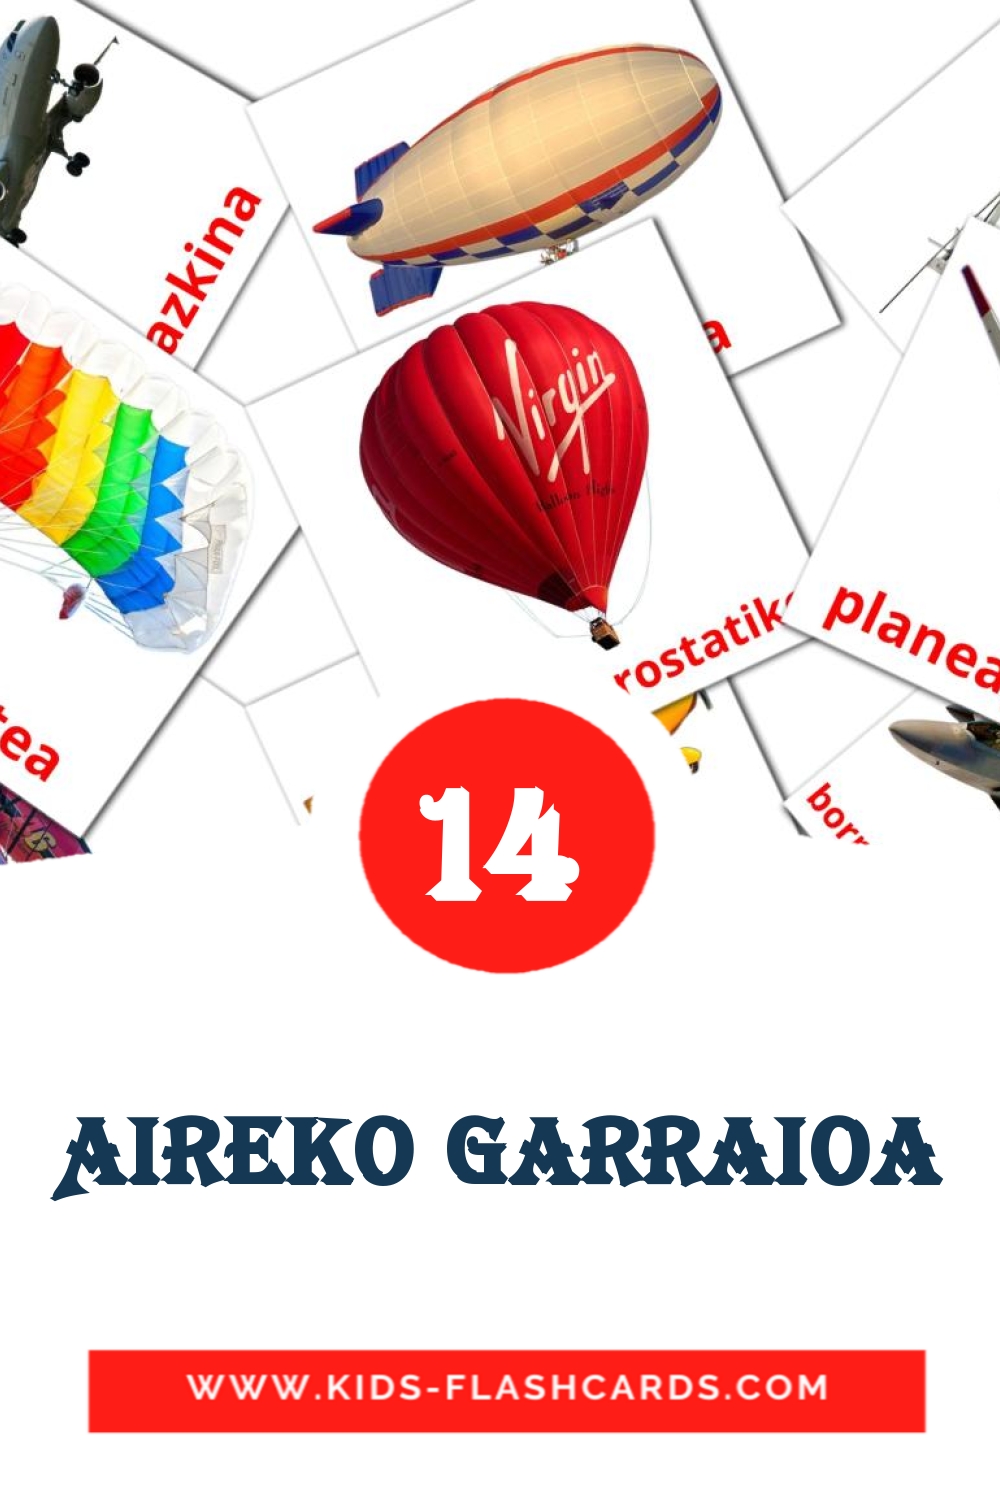 14 Aireko garraioa fotokaarten voor kleuters in het baskisch